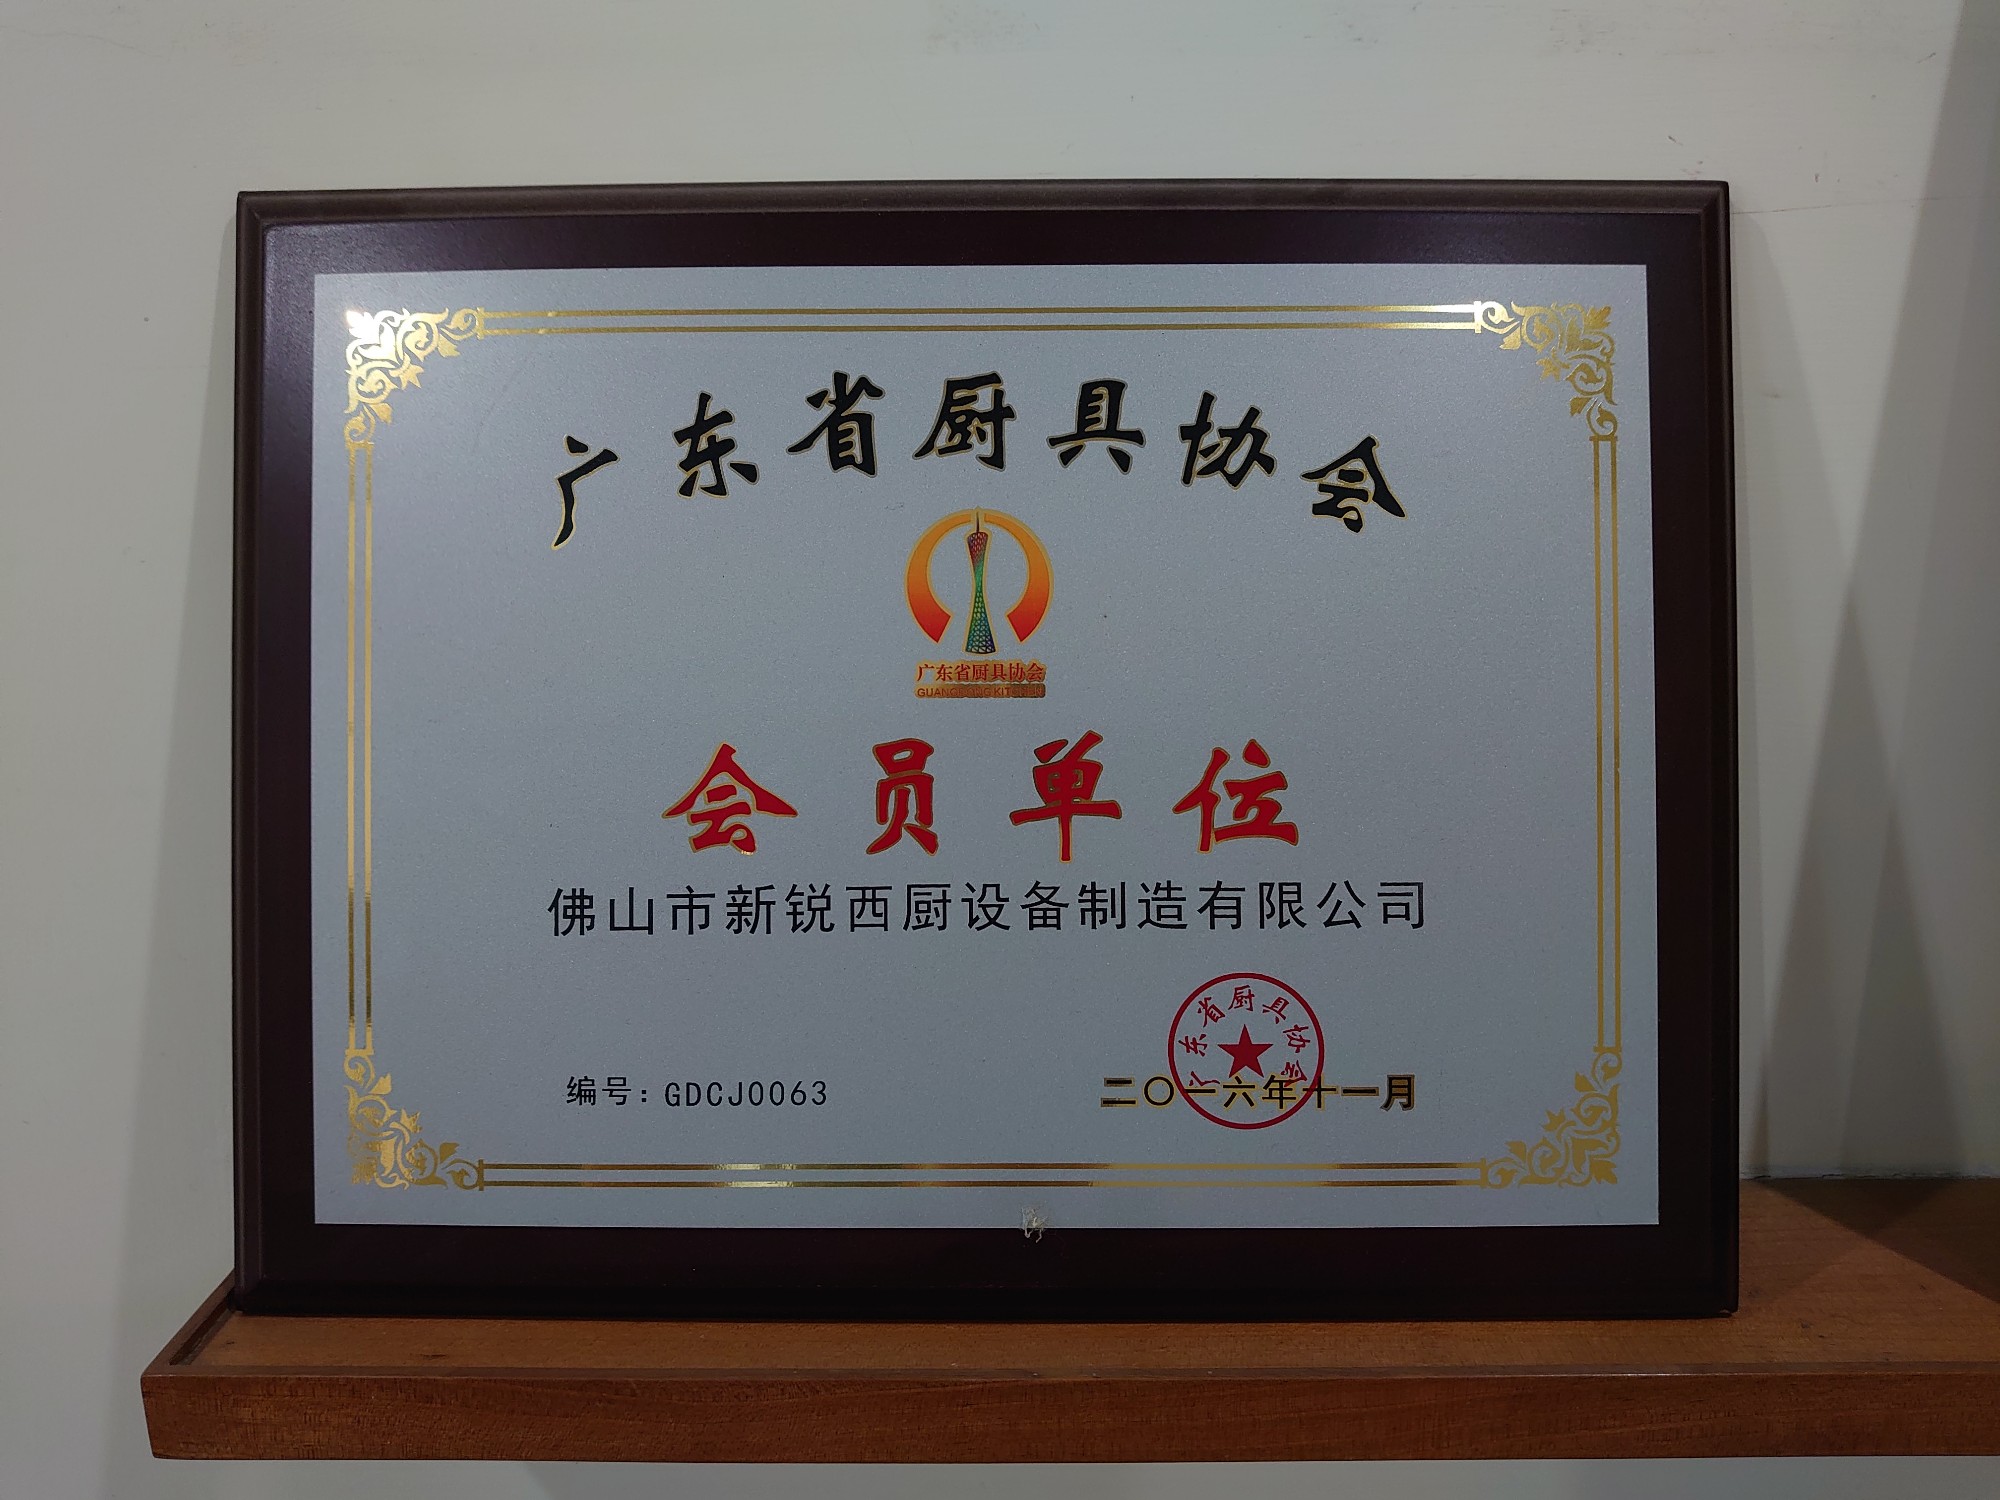 Associação de Utensílios de Cozinha da Província de Guangdong